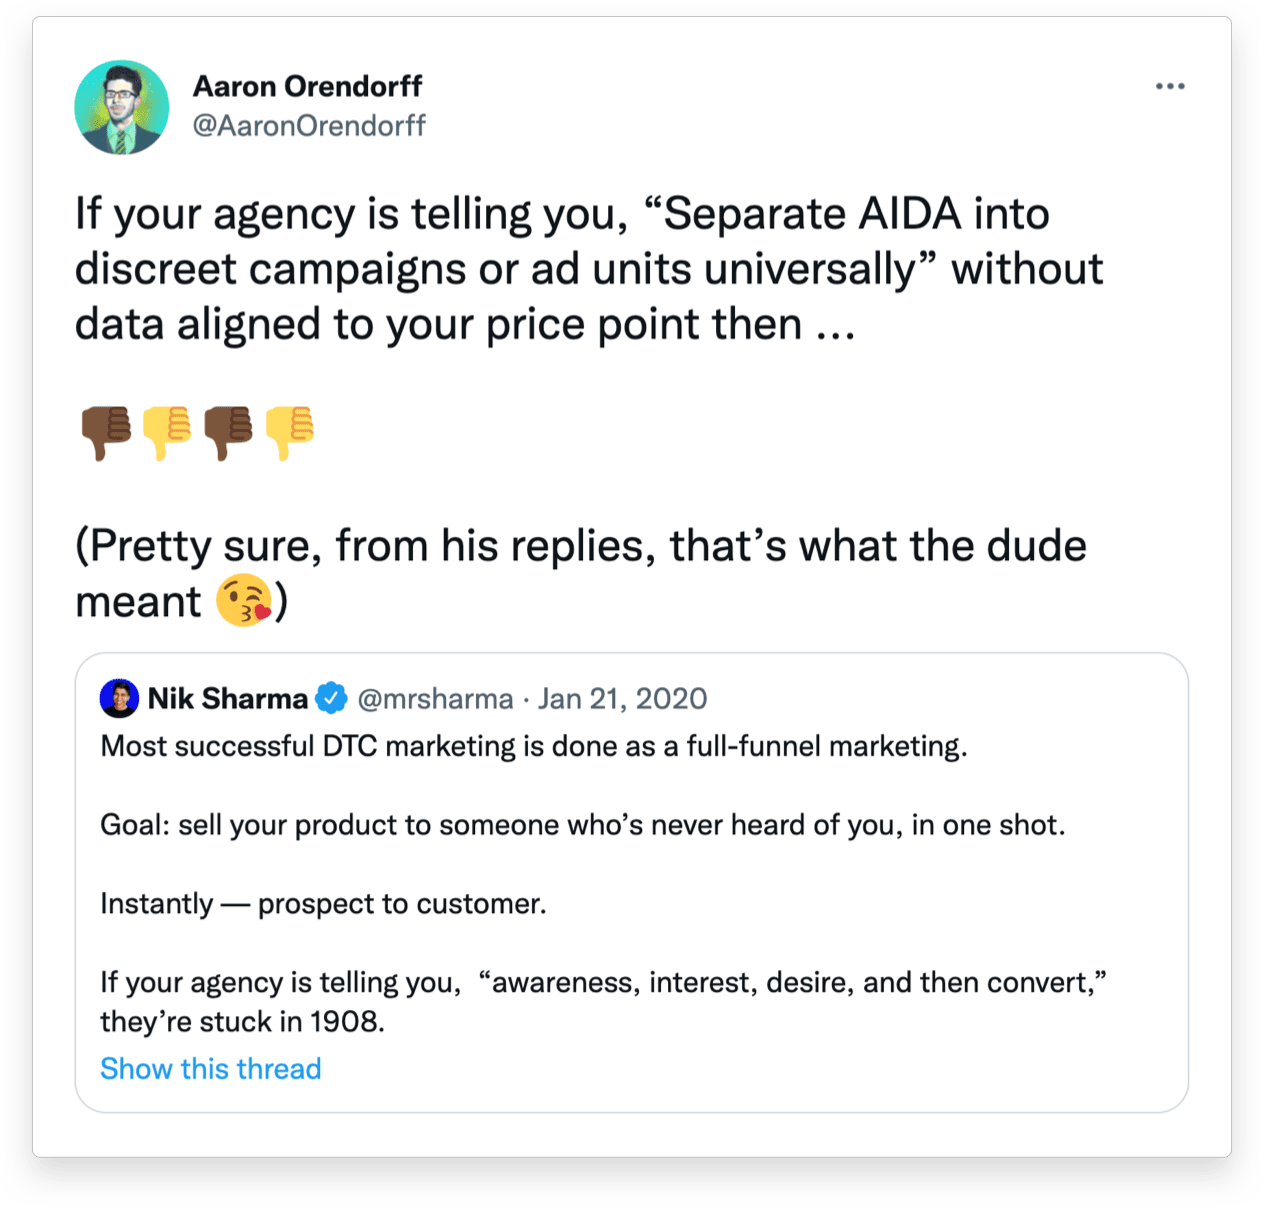 Aaron Orendorff Tweet on DTC Full-Funnel Marketing and Creative (AIDA)